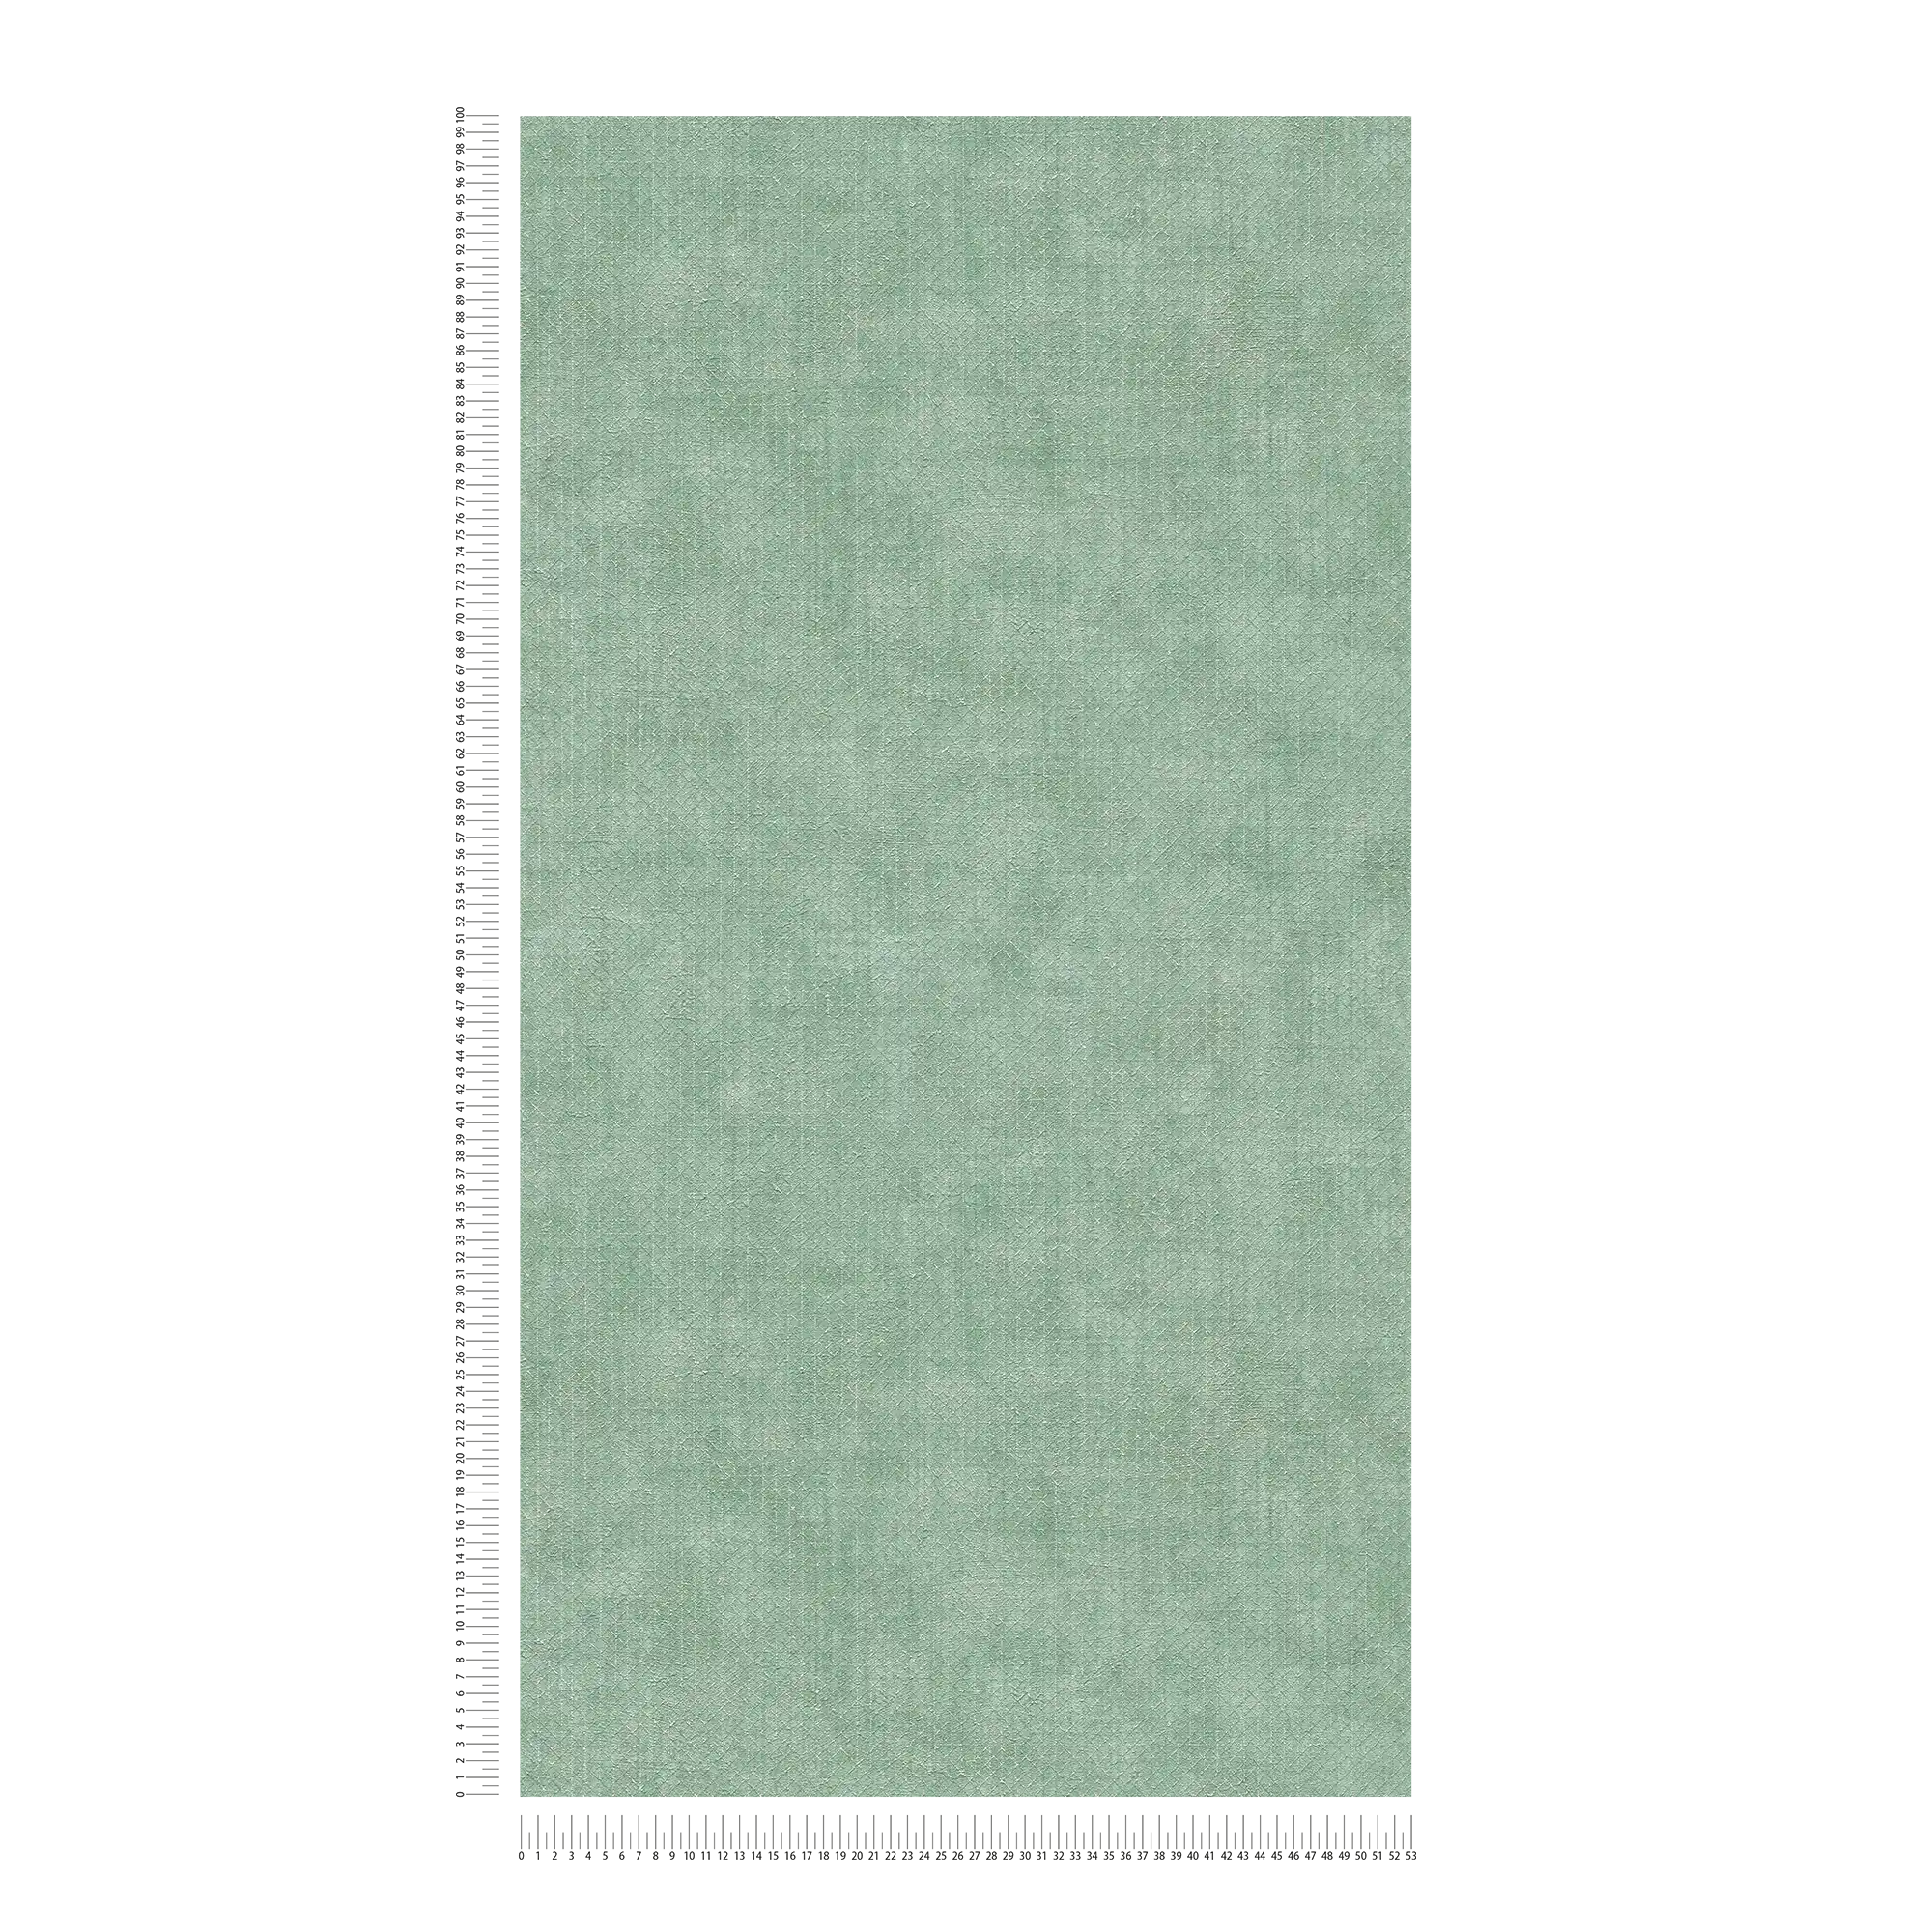             Papier peint vert menthe argenté motif structuré - métallique, vert
        